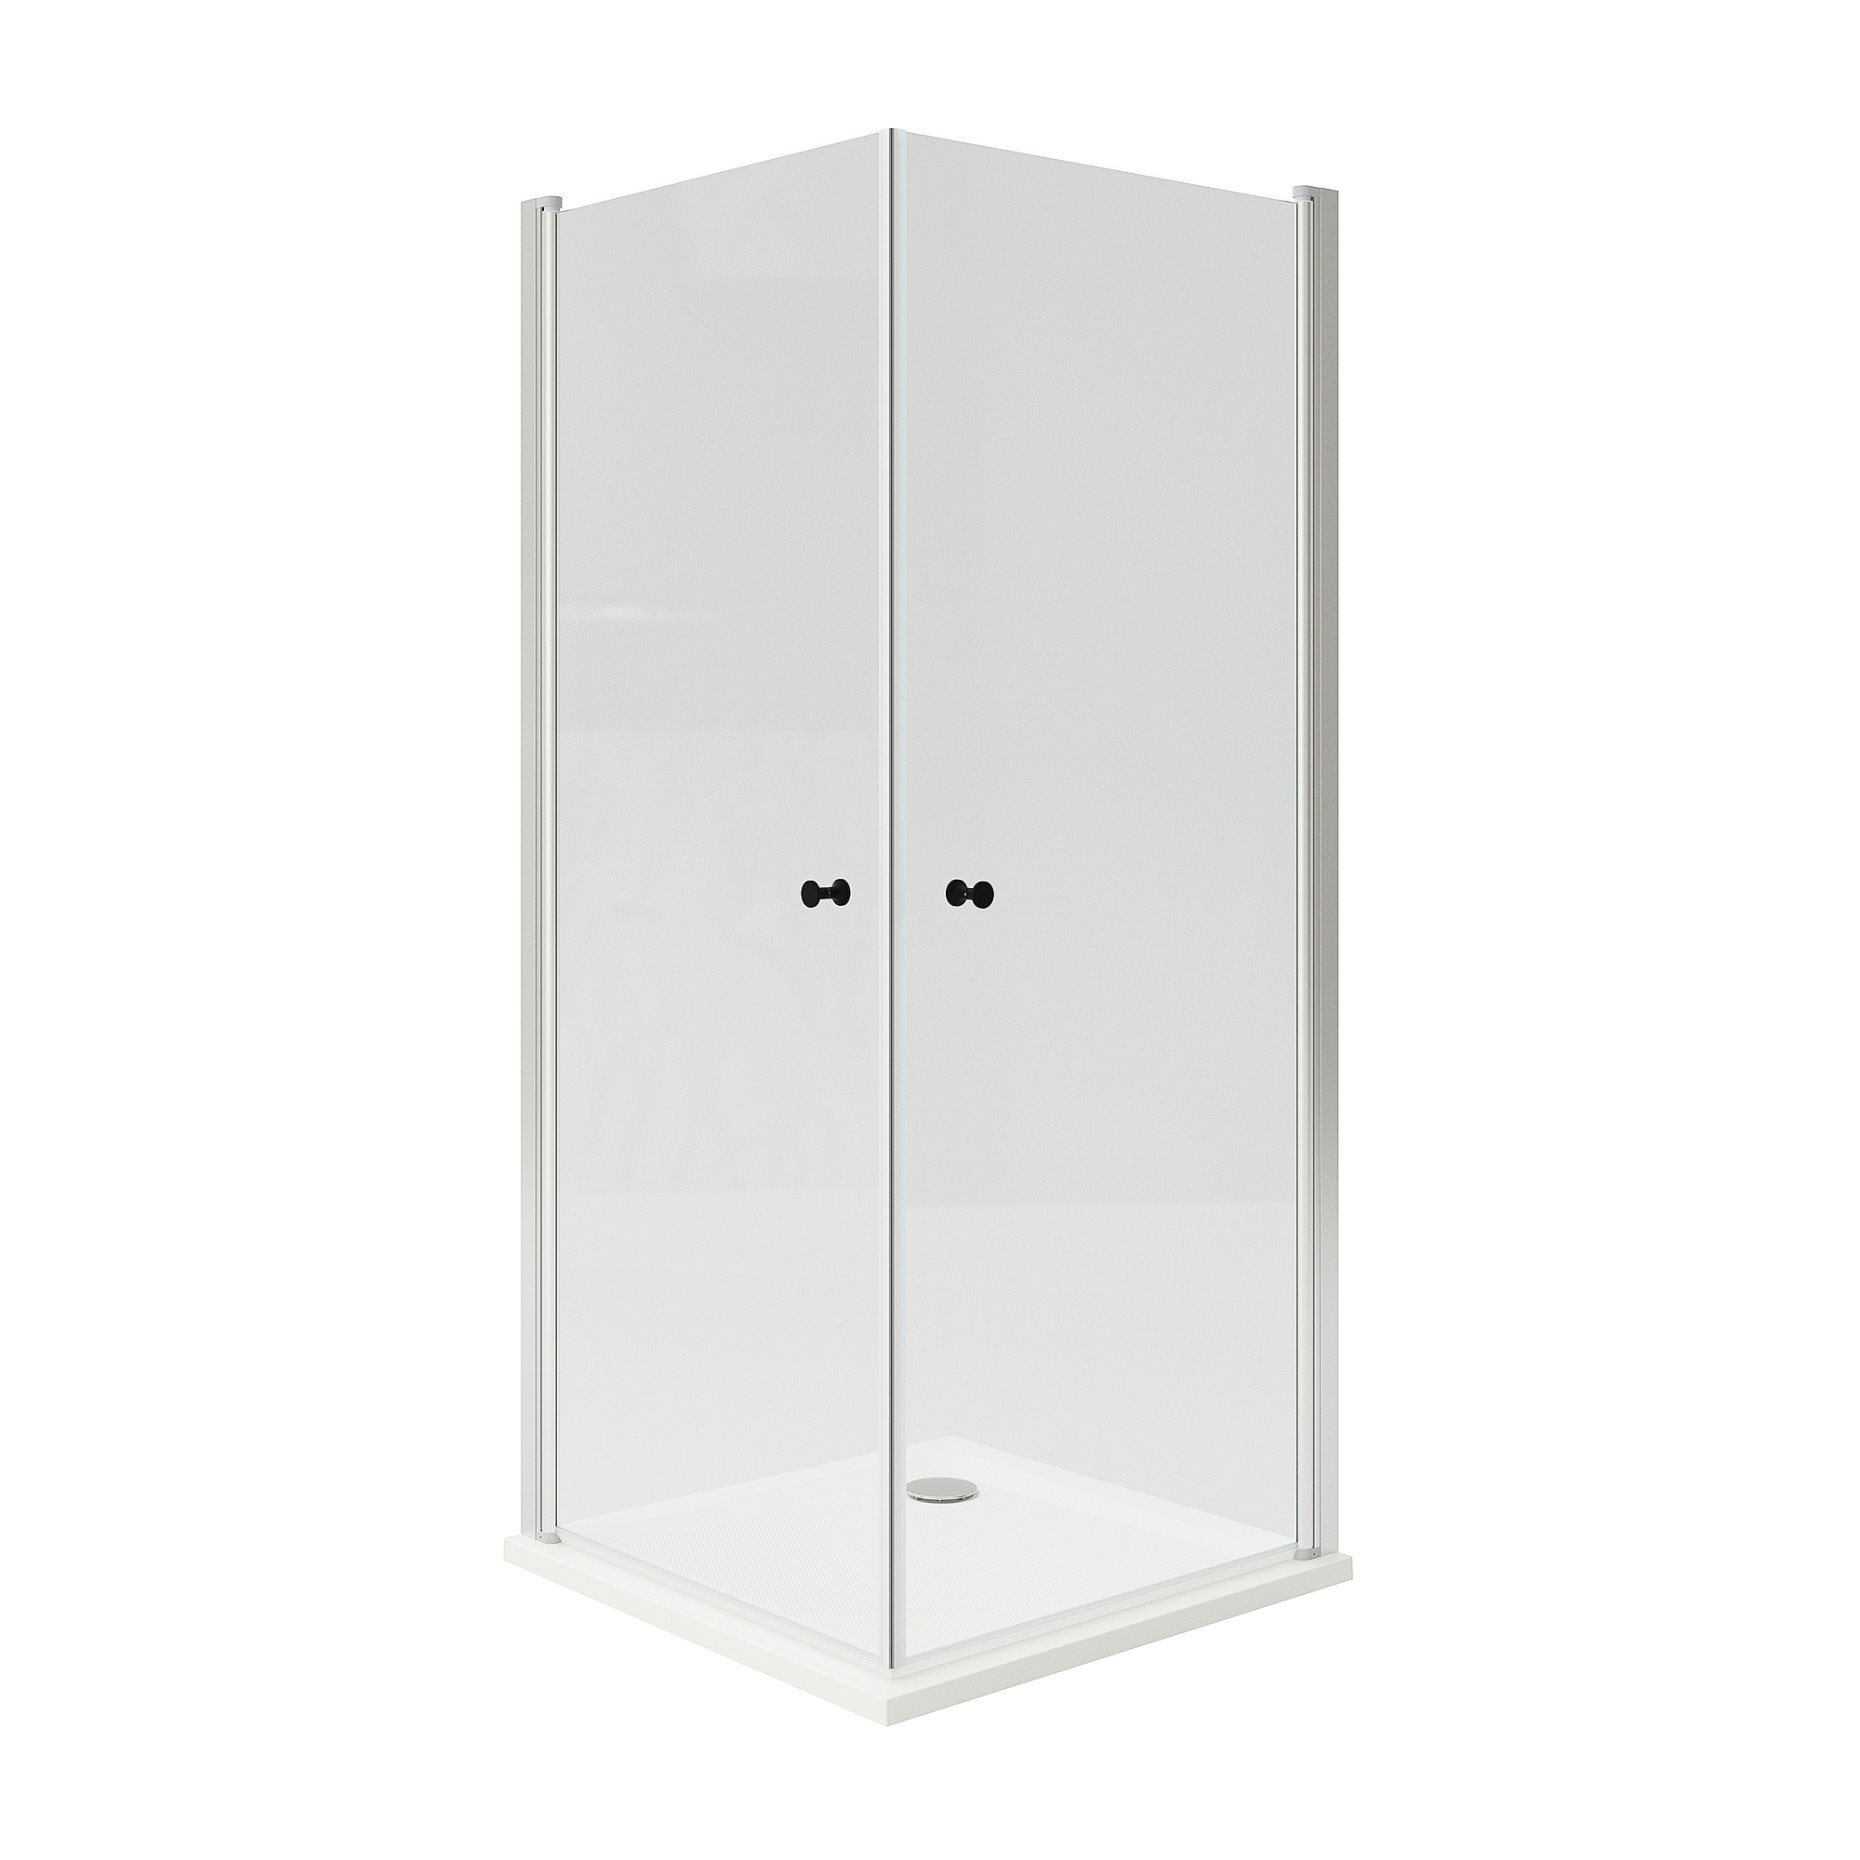 OPPEJEN/FOTINGEN, shower enclosure with 2 doors/tray, 90x90x205 cm, 593.262.52